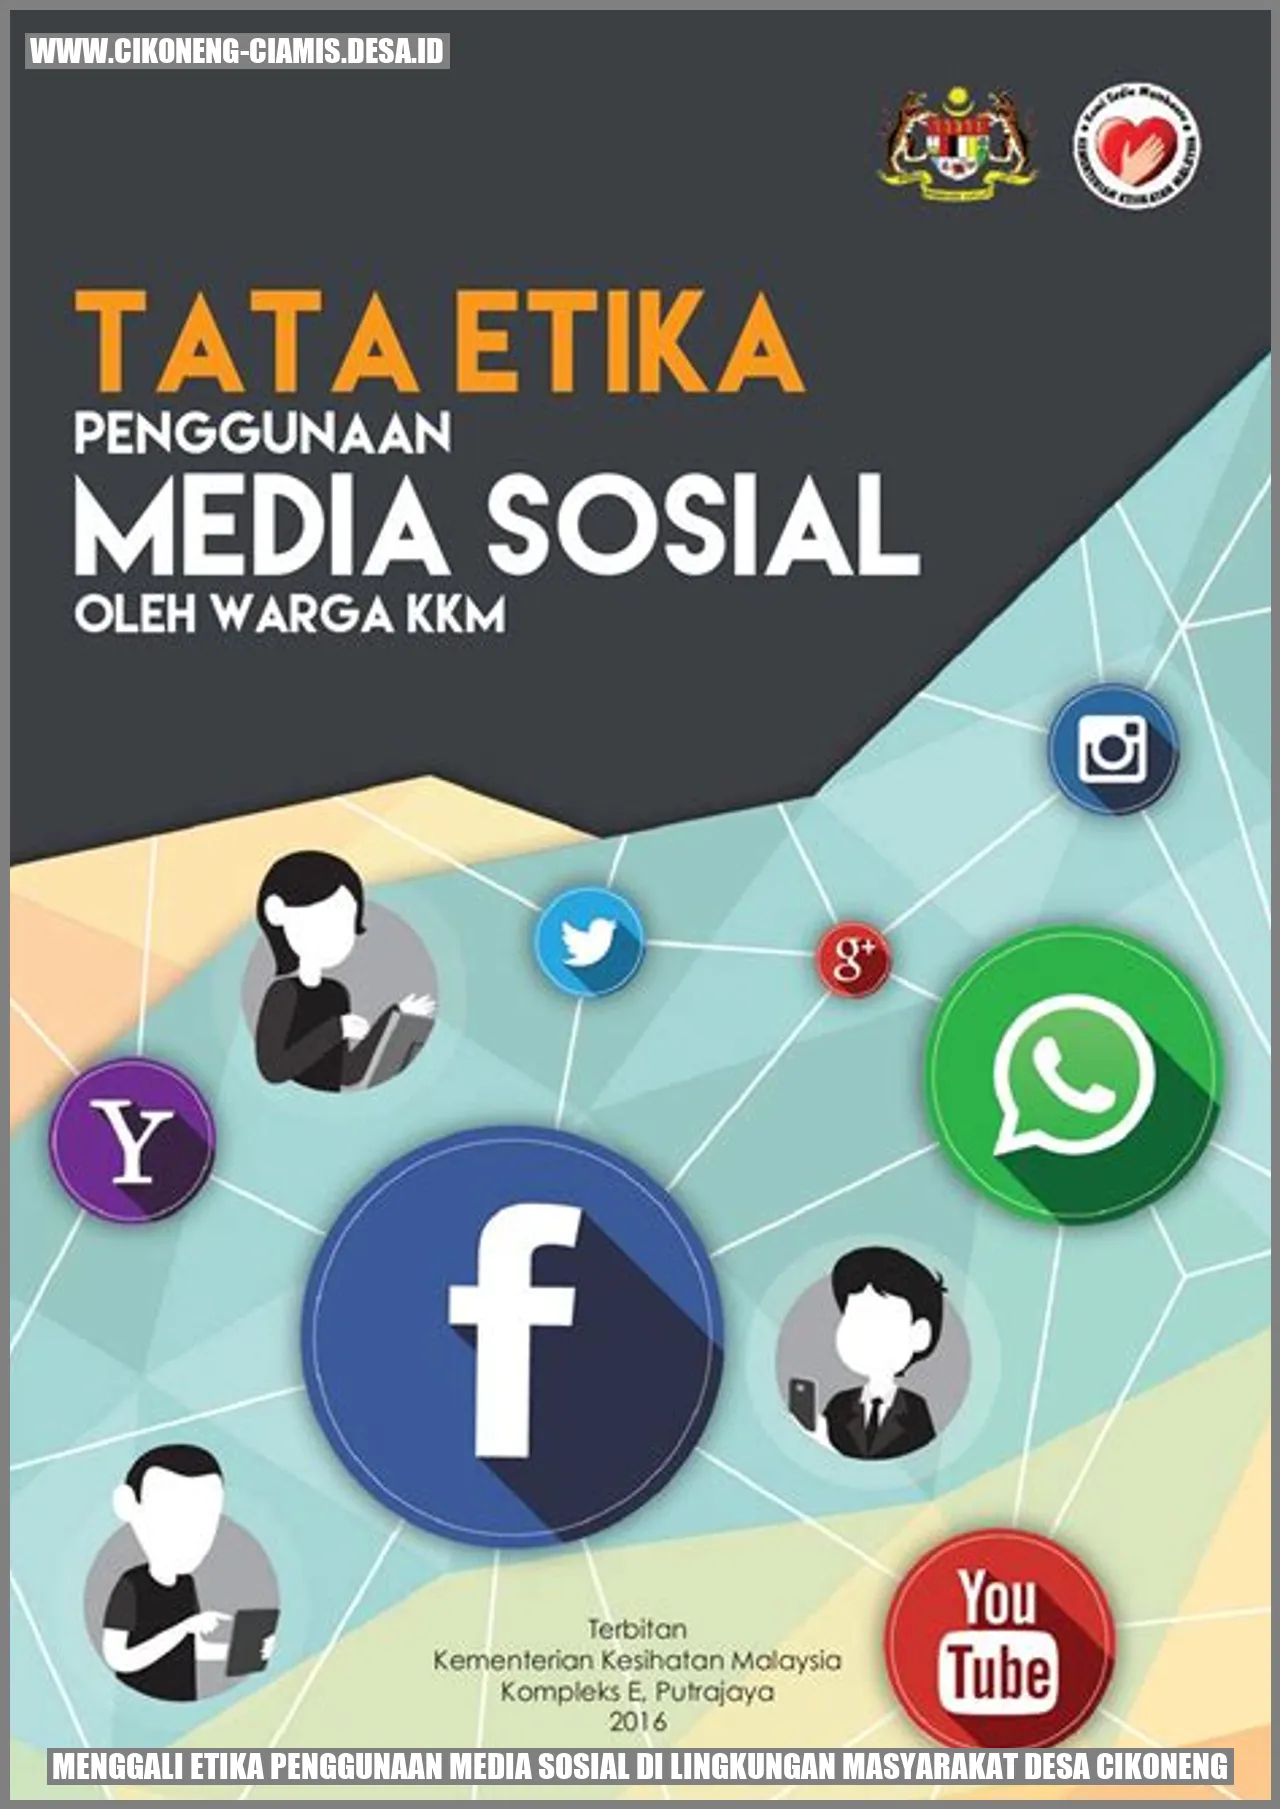 Menggali Etika Penggunaan Media Sosial di Lingkungan Masyarakat Desa Cikoneng